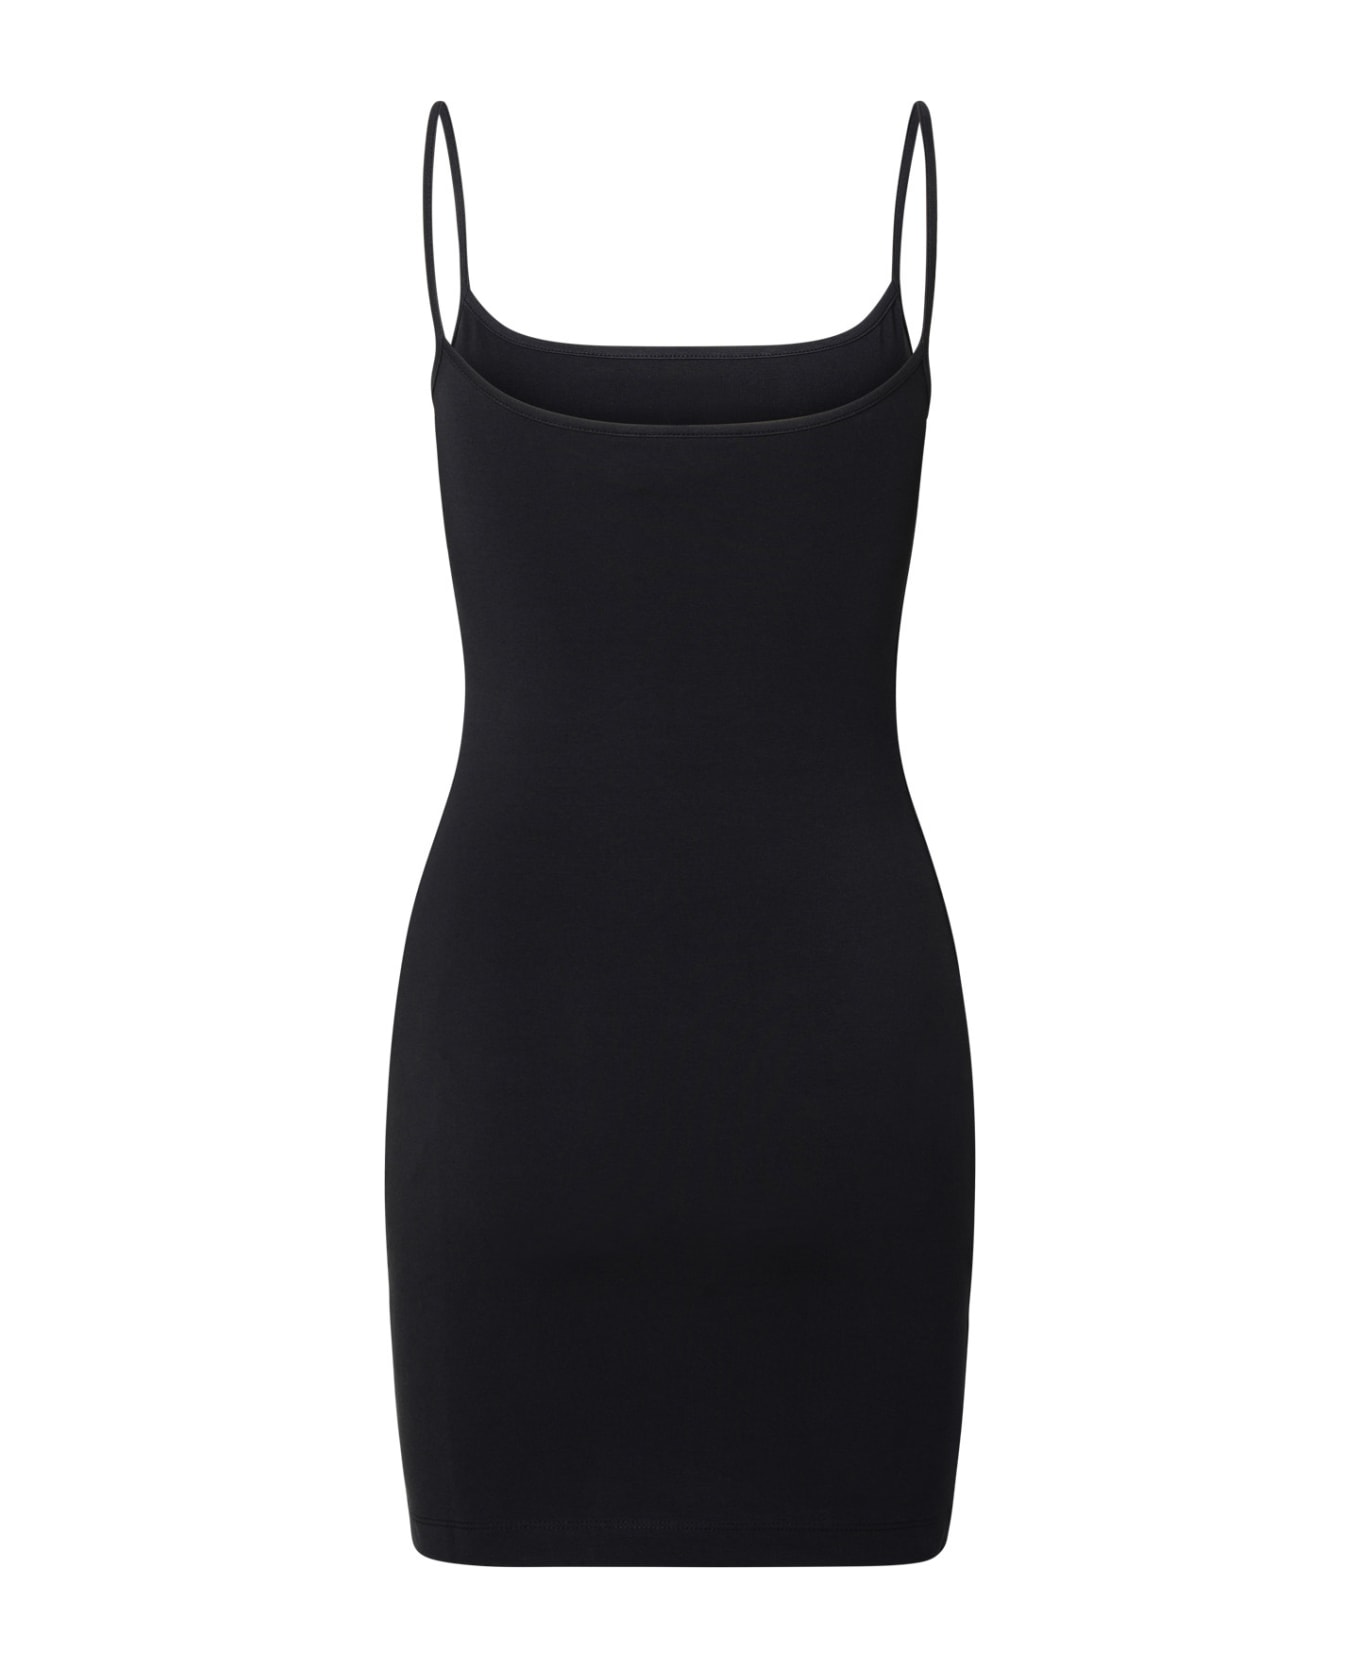 Chiara Ferragni Black Cotton Blend Dress - Black